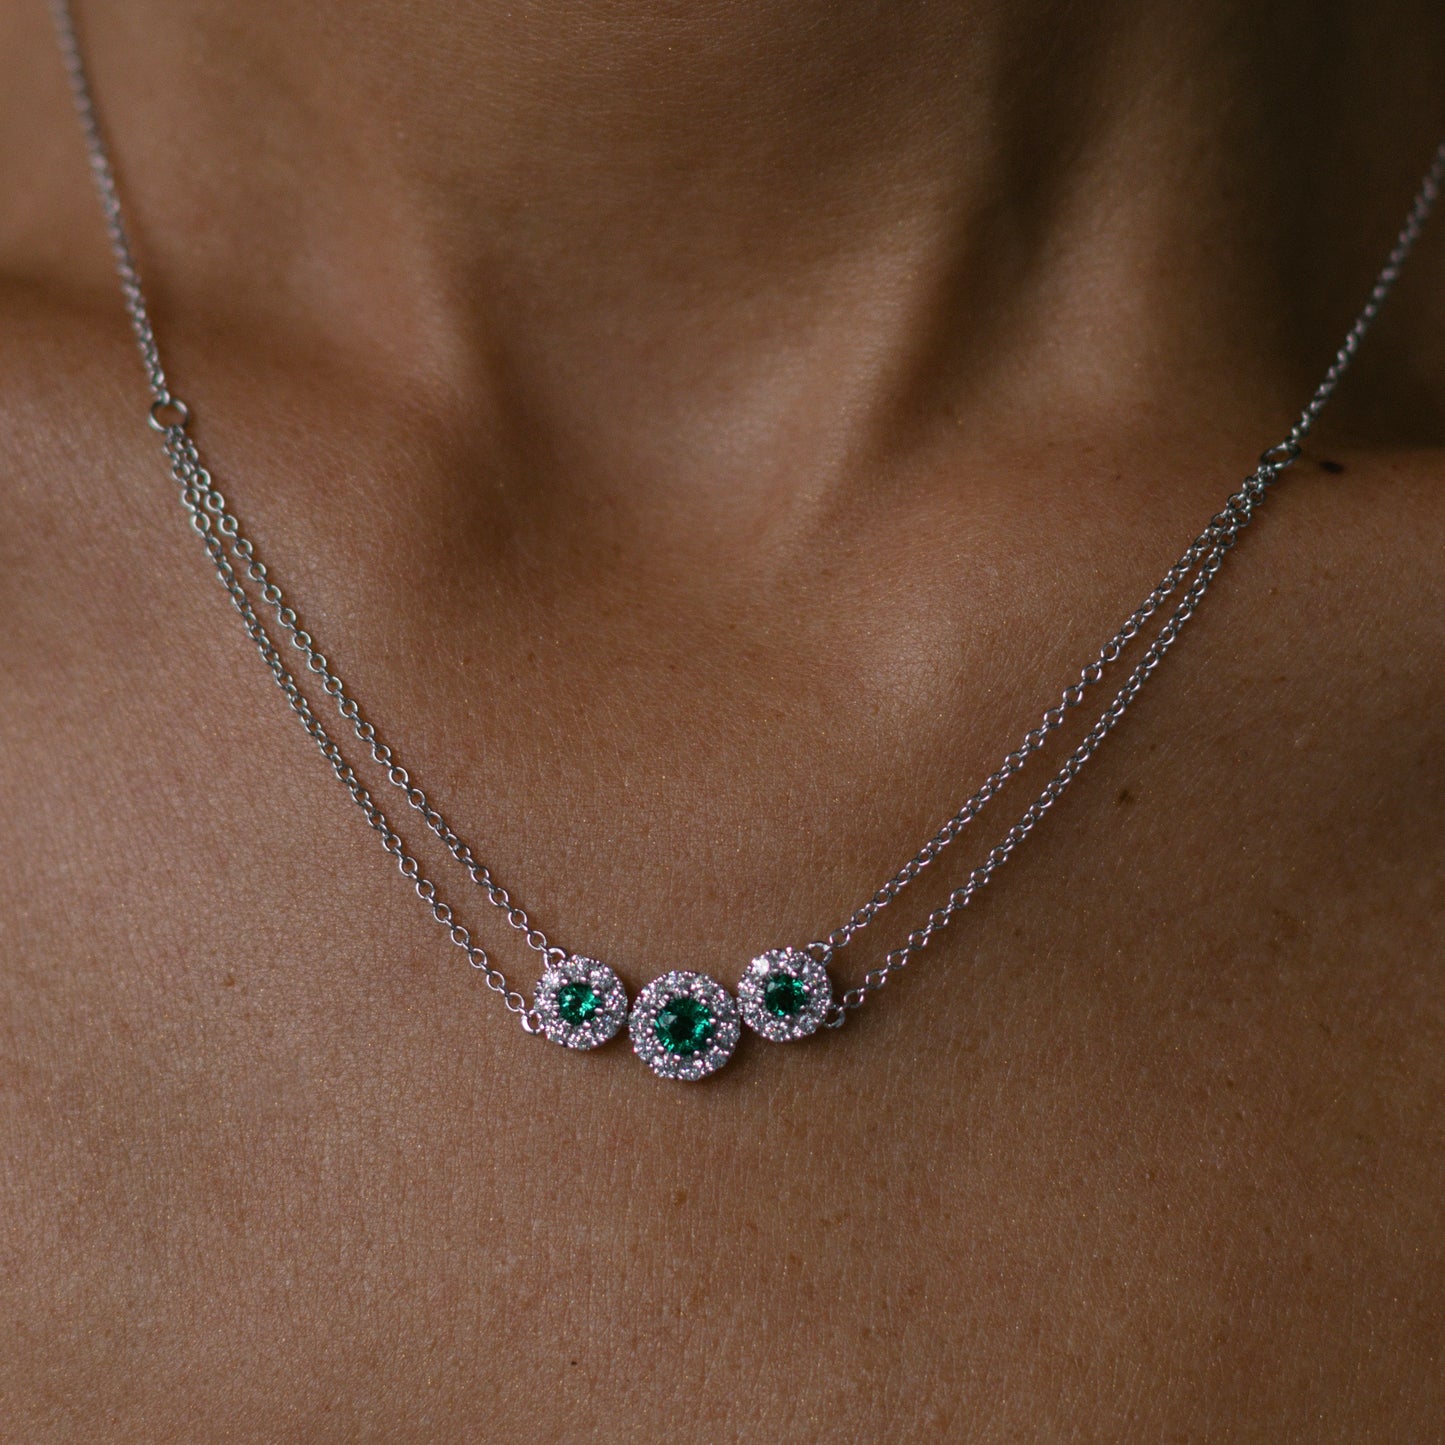 The Emerald Mini Necklace